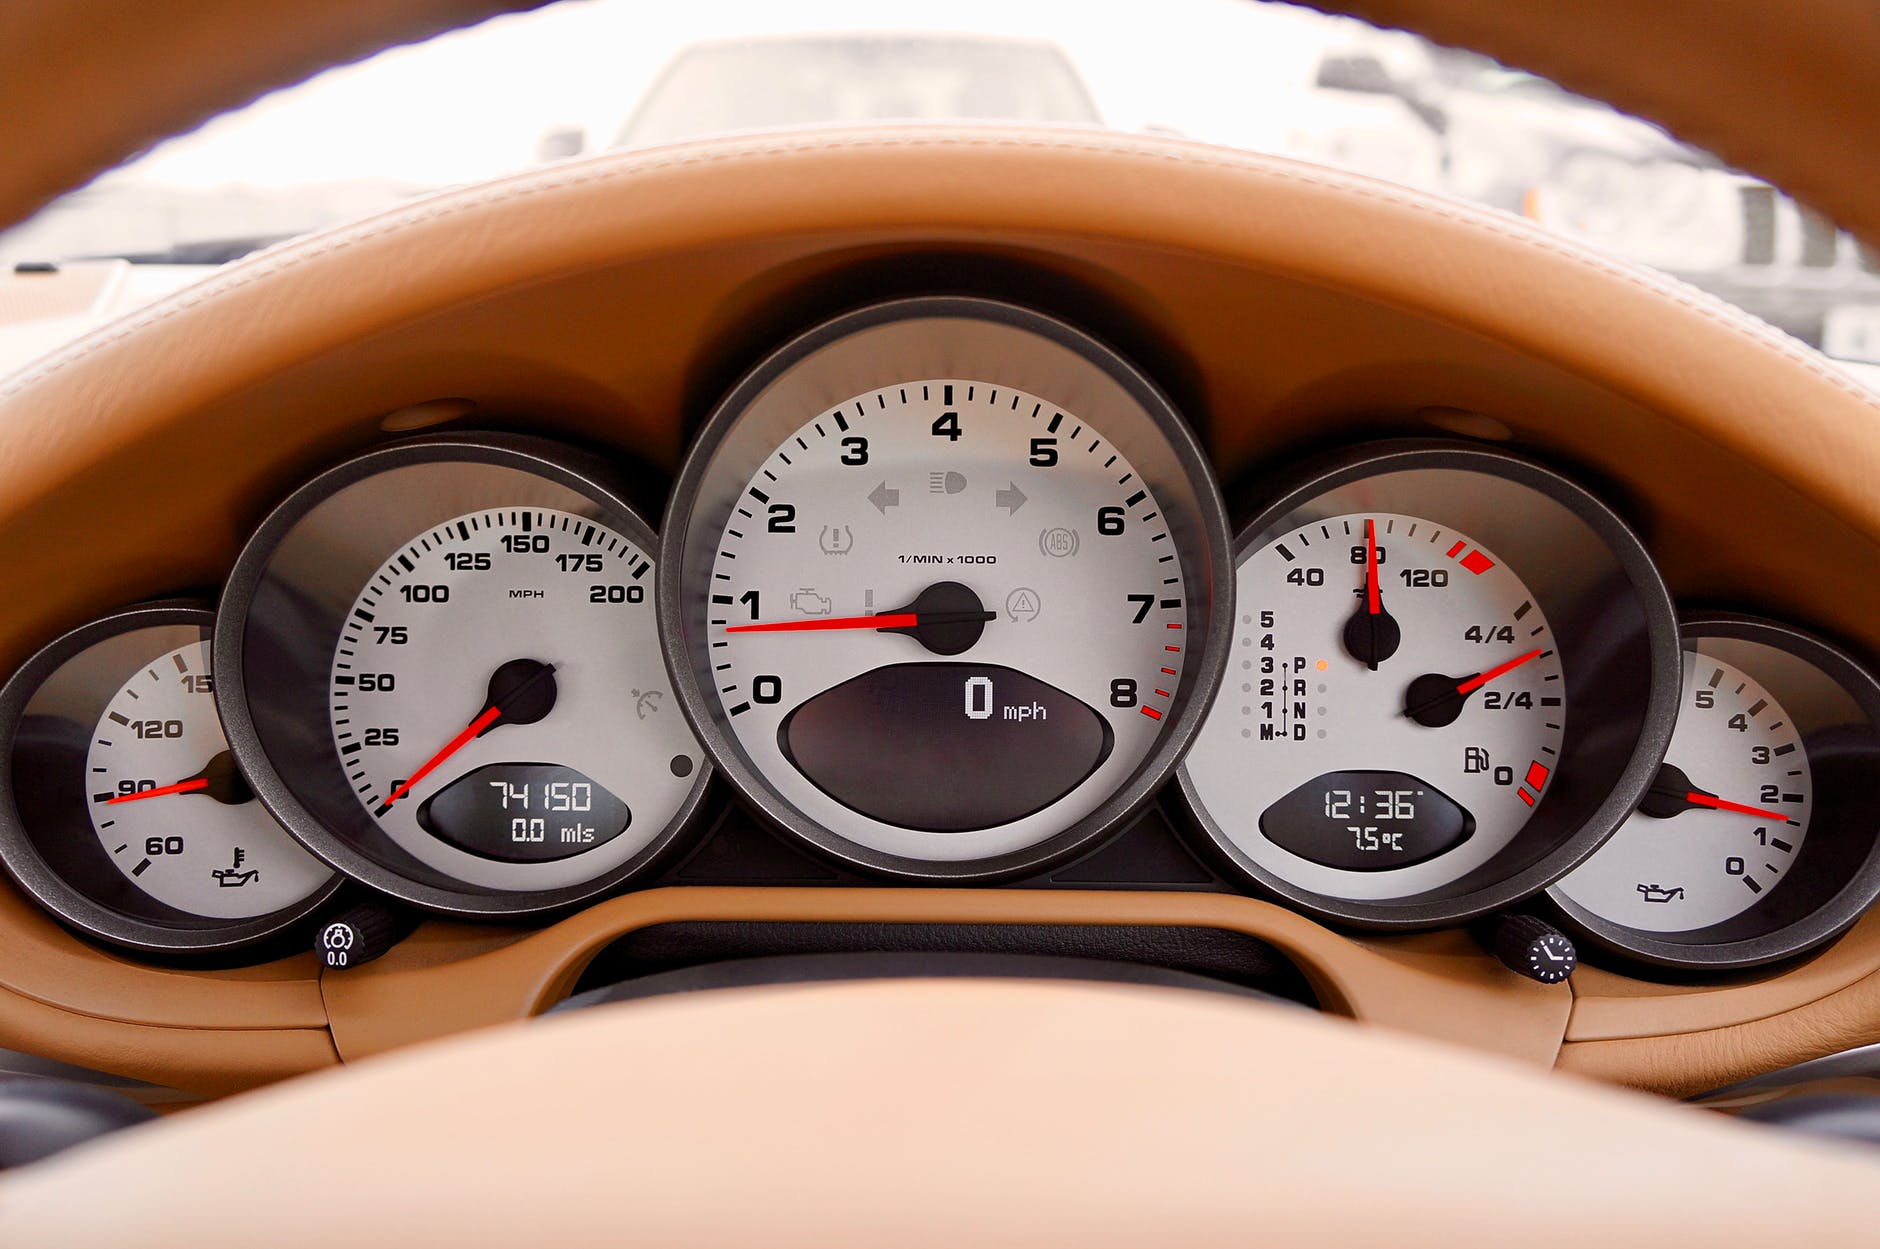 车主可以借助转速表做出更精准的驾驶判断,比如通过换挡让发动机转速